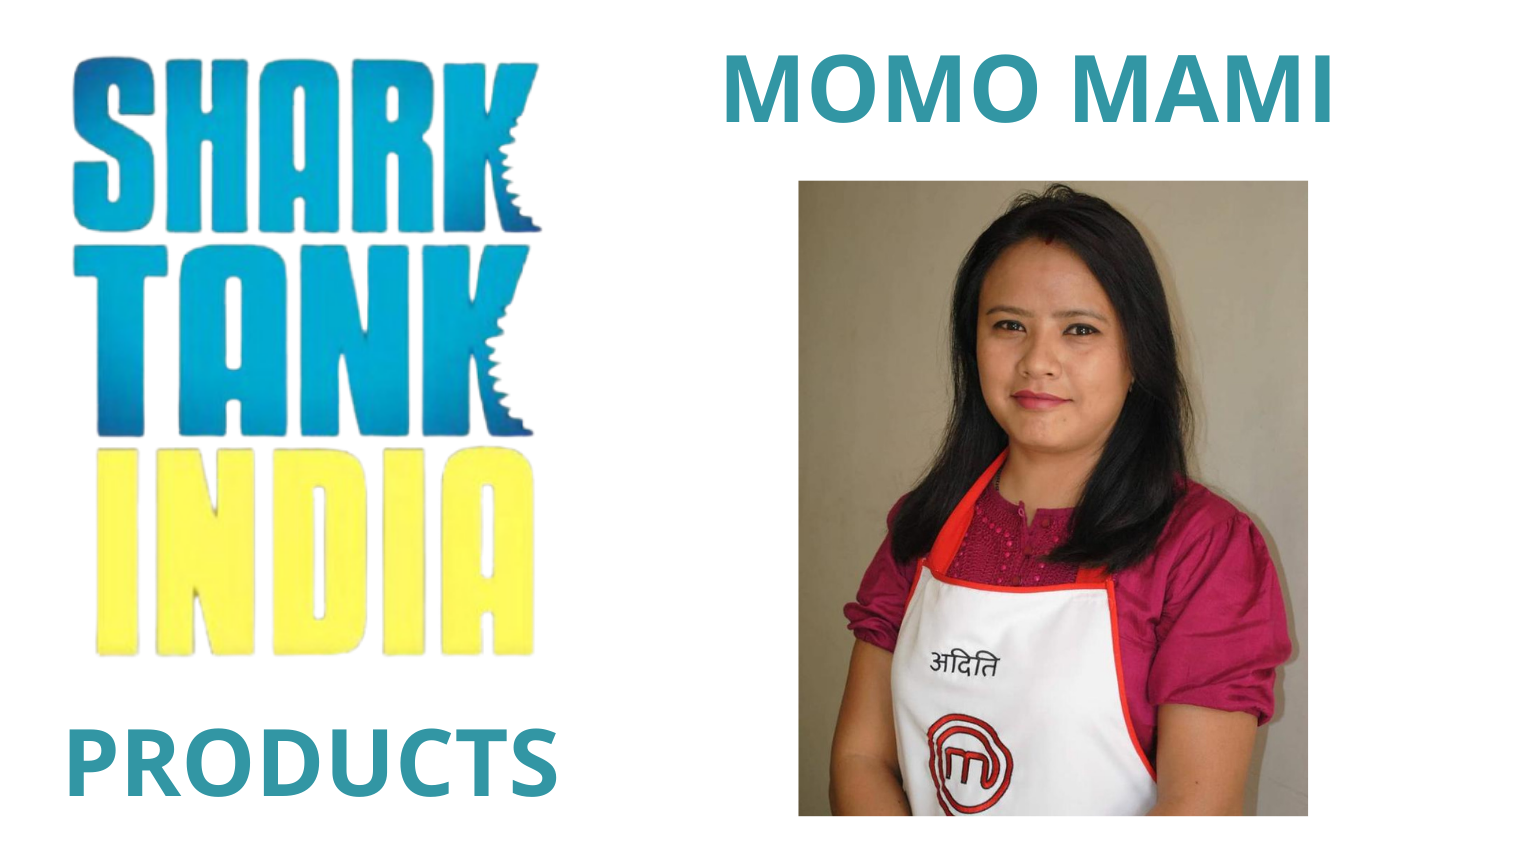 shark tank india product momo mami